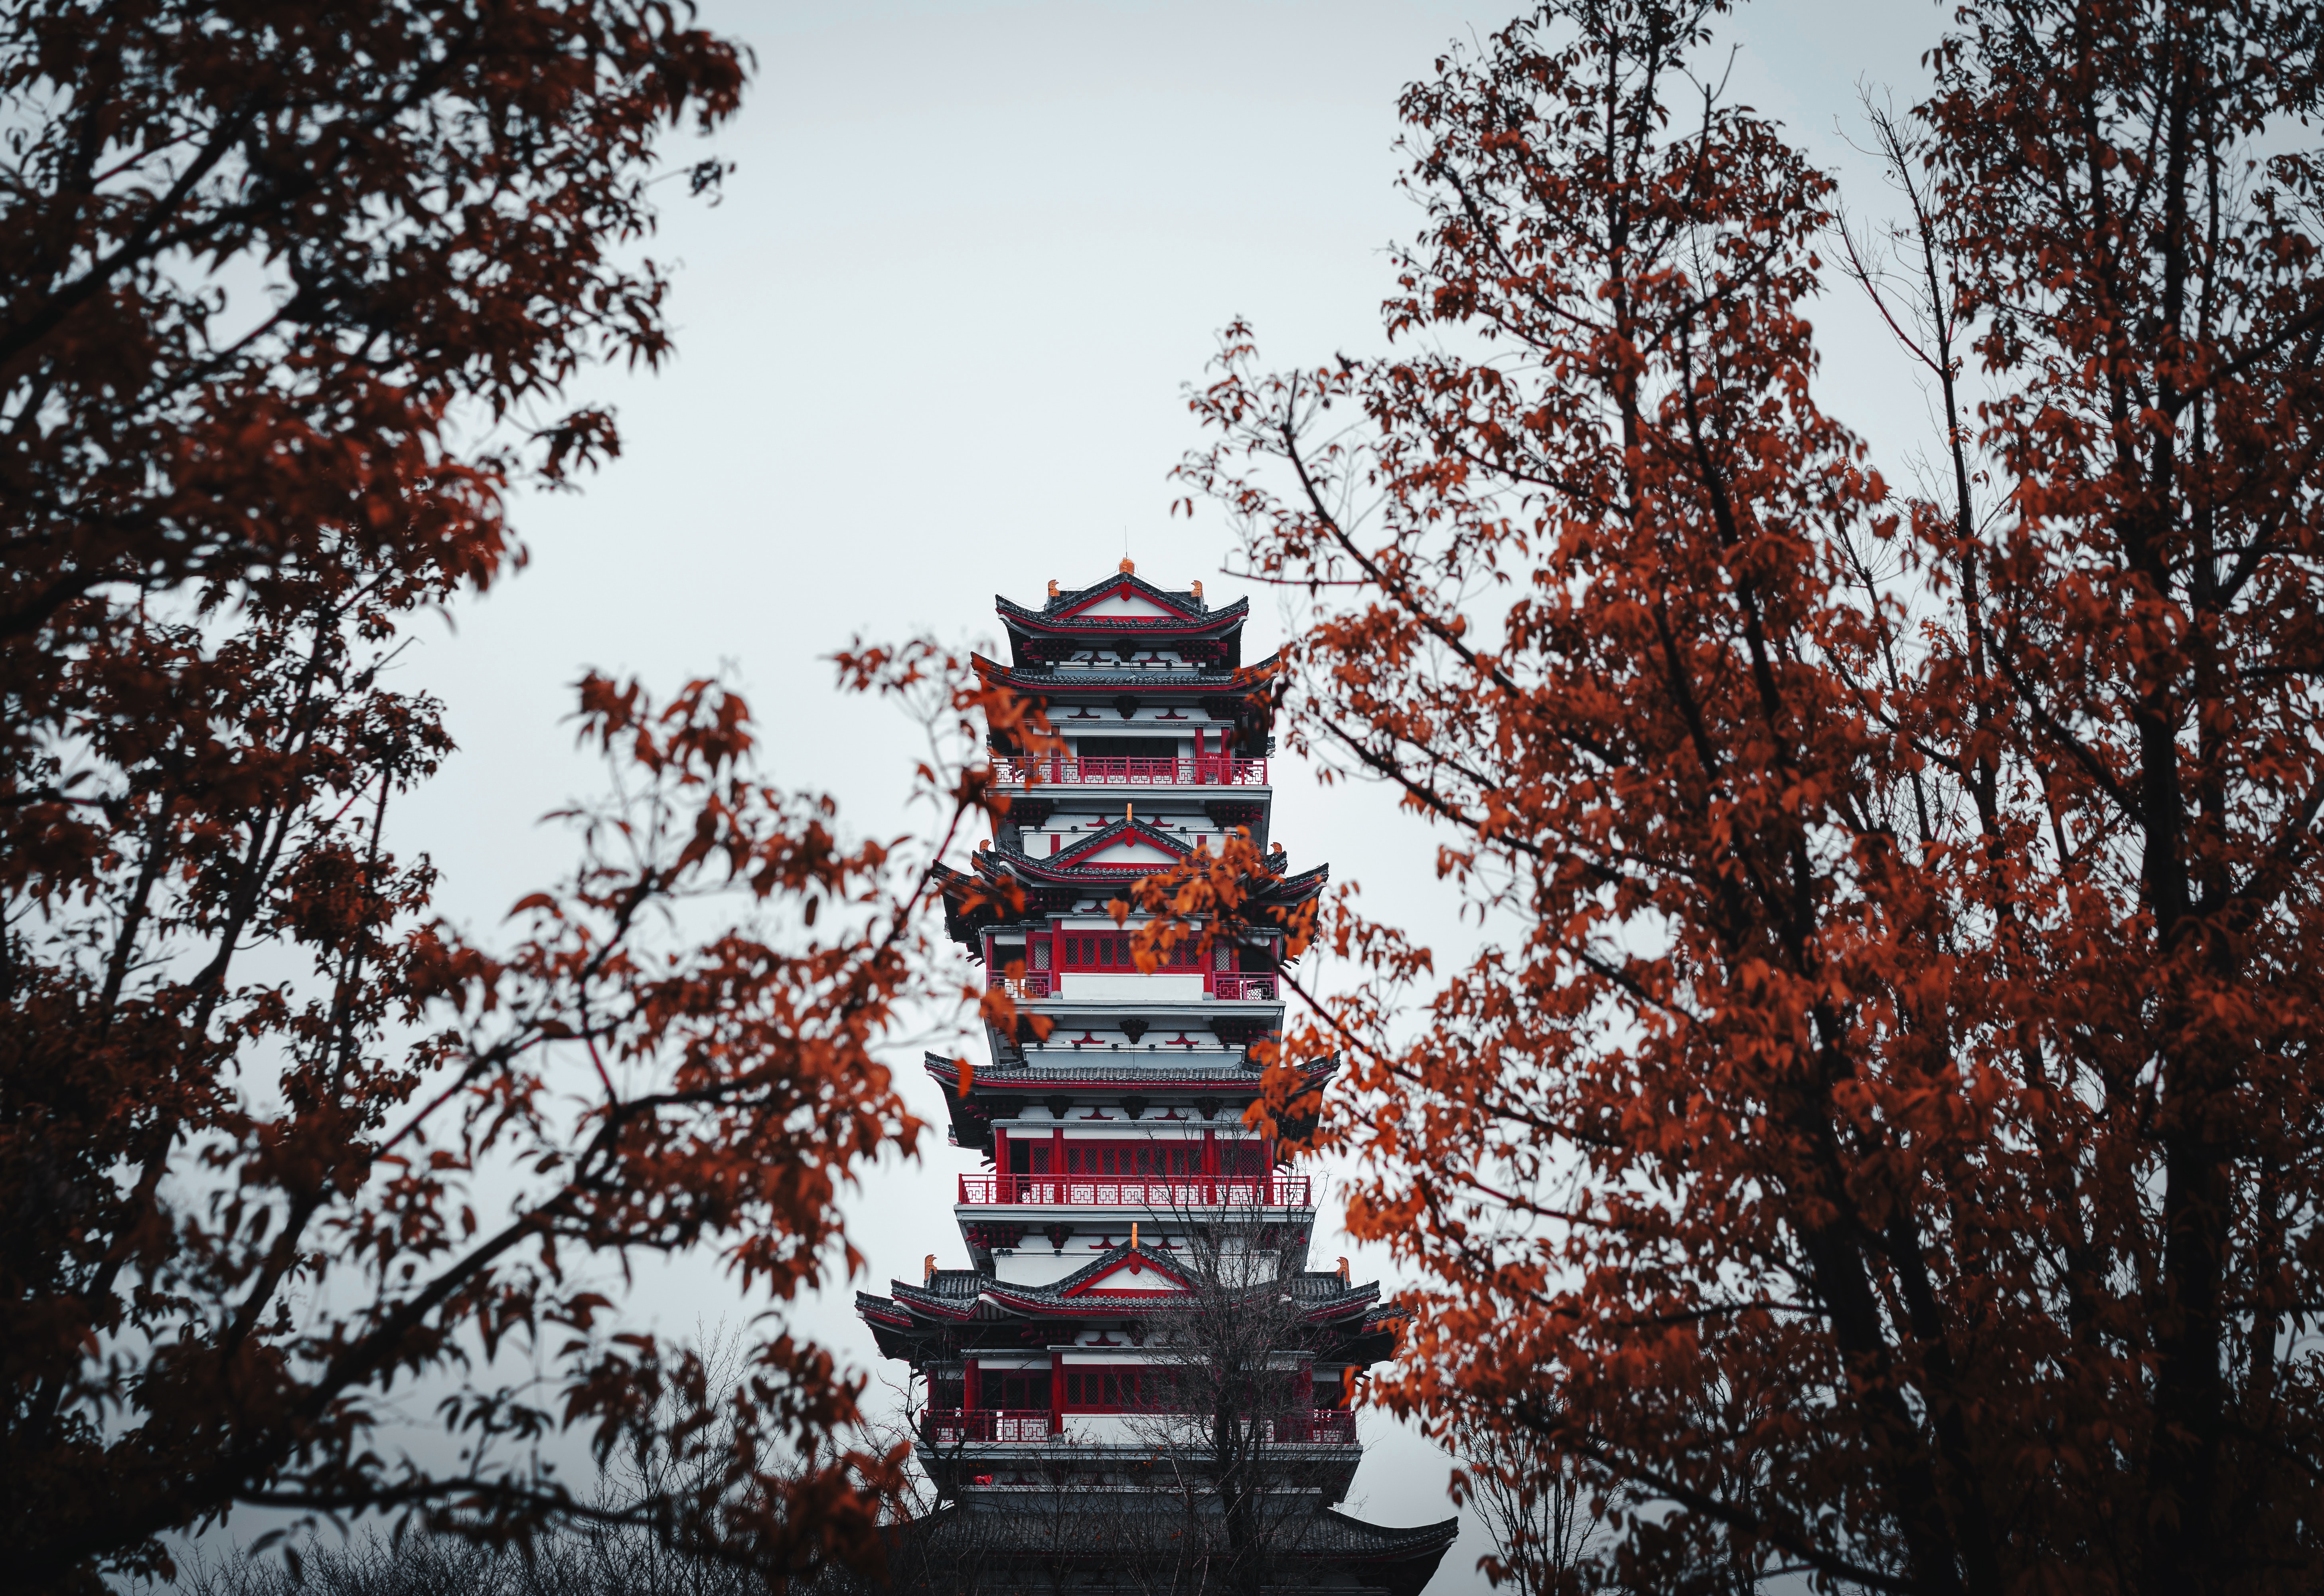 temple, pagoda, trees, architecture, building, miscellanea, miscellaneous